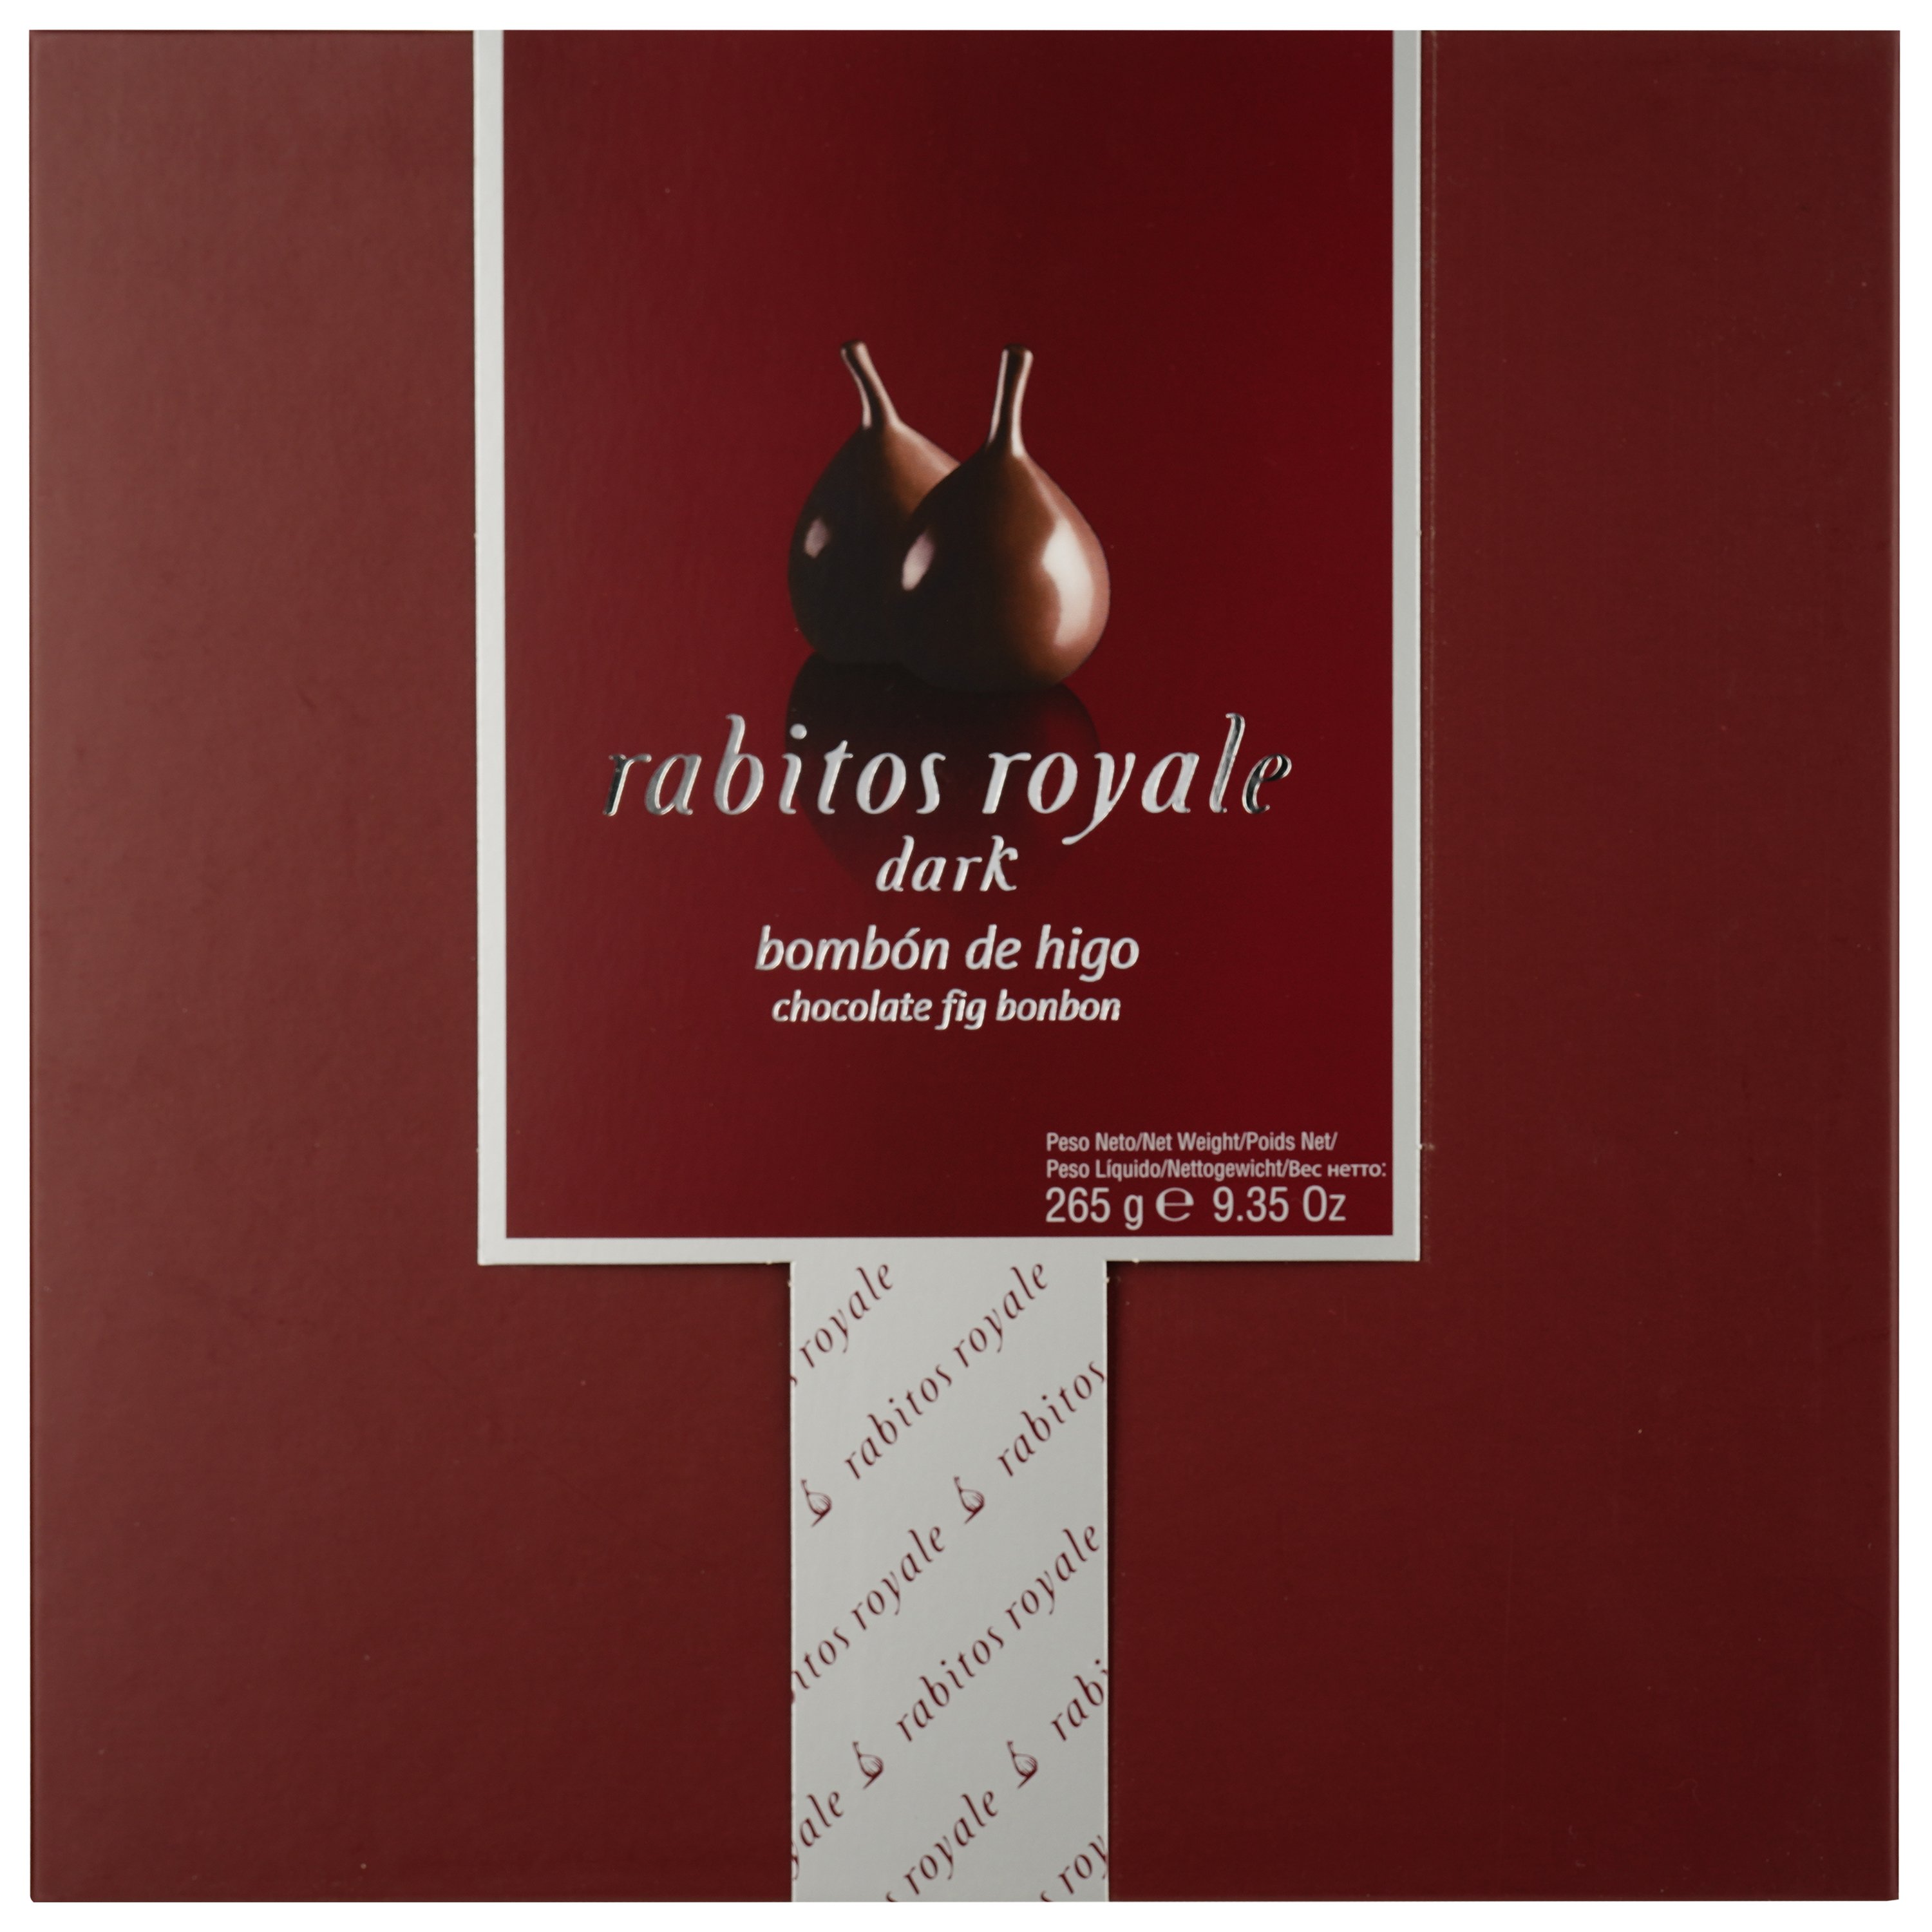 Конфеты Rabitos Royale инжир в темном шоколаде, 265 г - фото 1